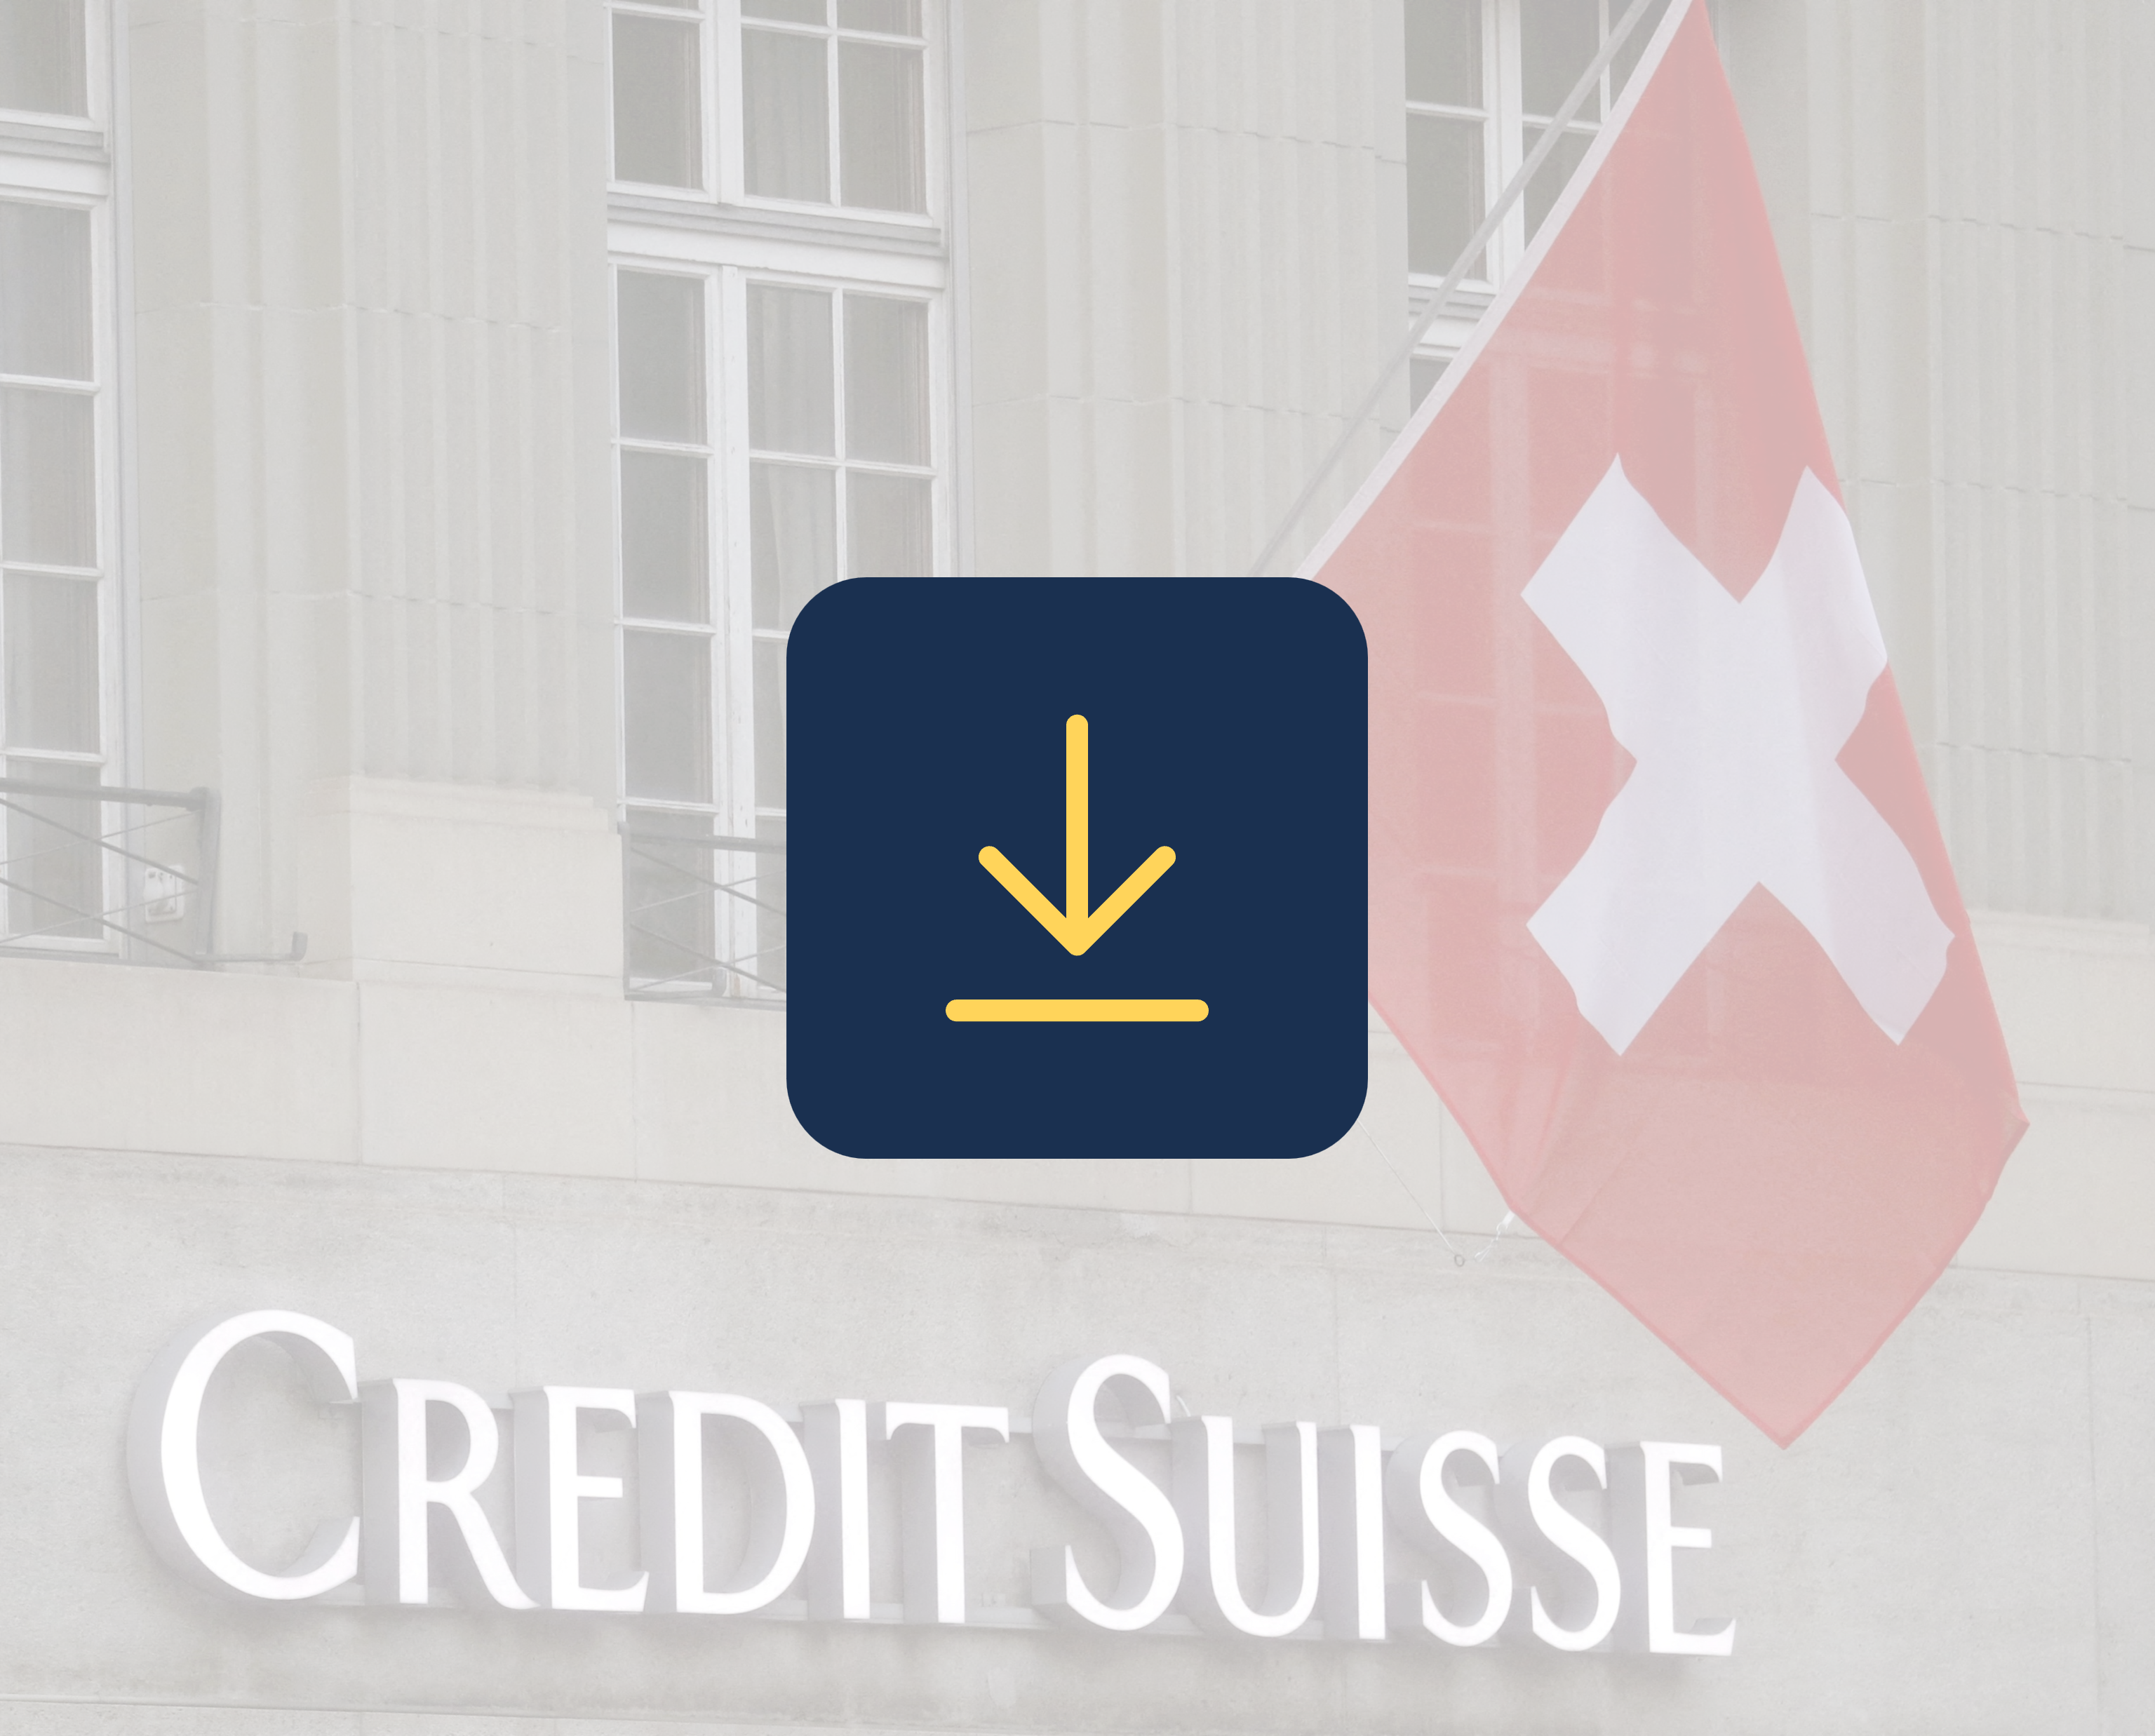 Etude sur la perception du rachat de crédit suisse_Qualinsight